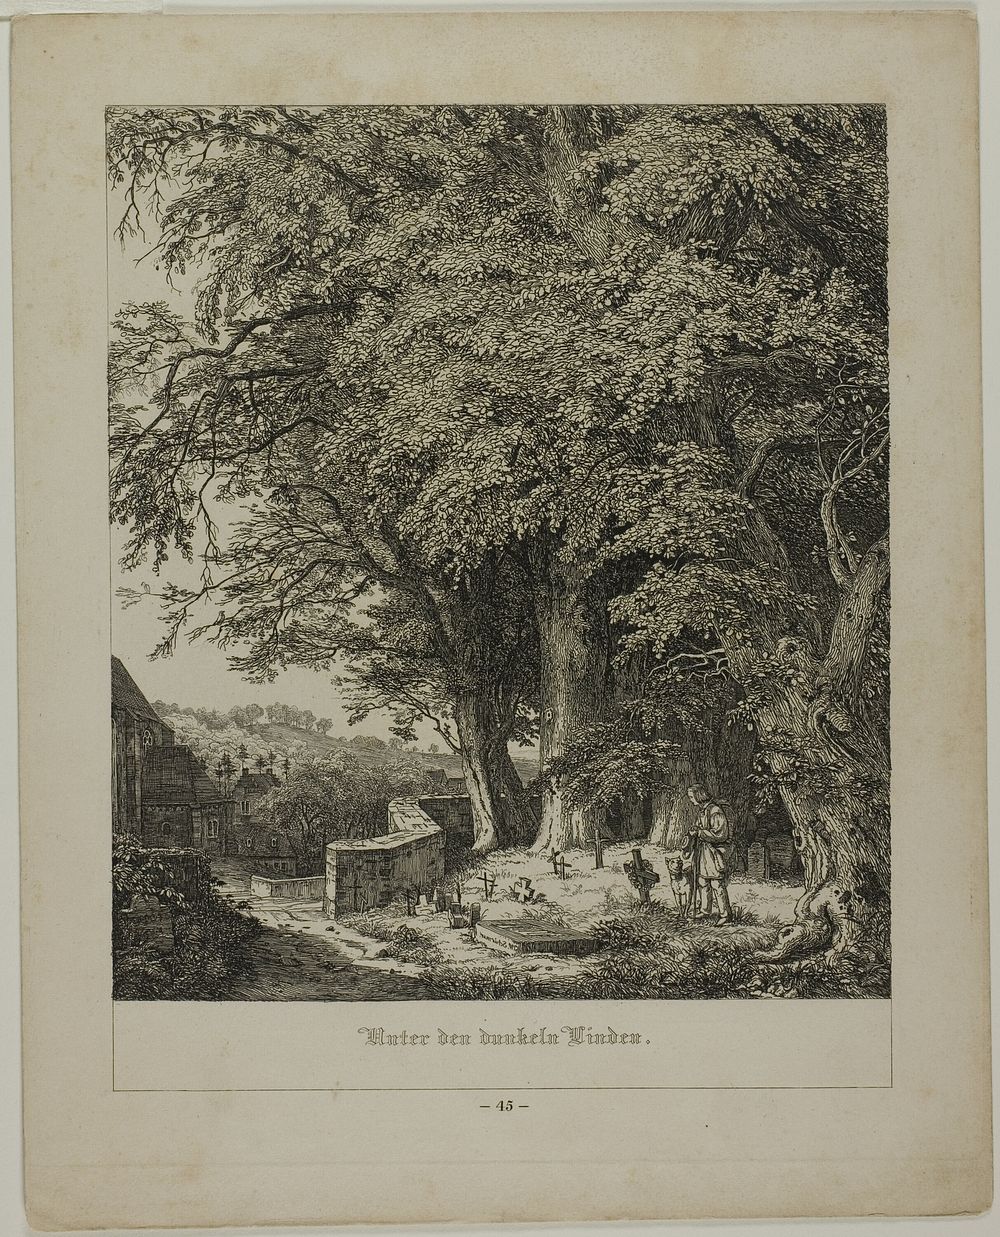 Under the Shady Linden Tree by Johann Wilhelm Schirmer